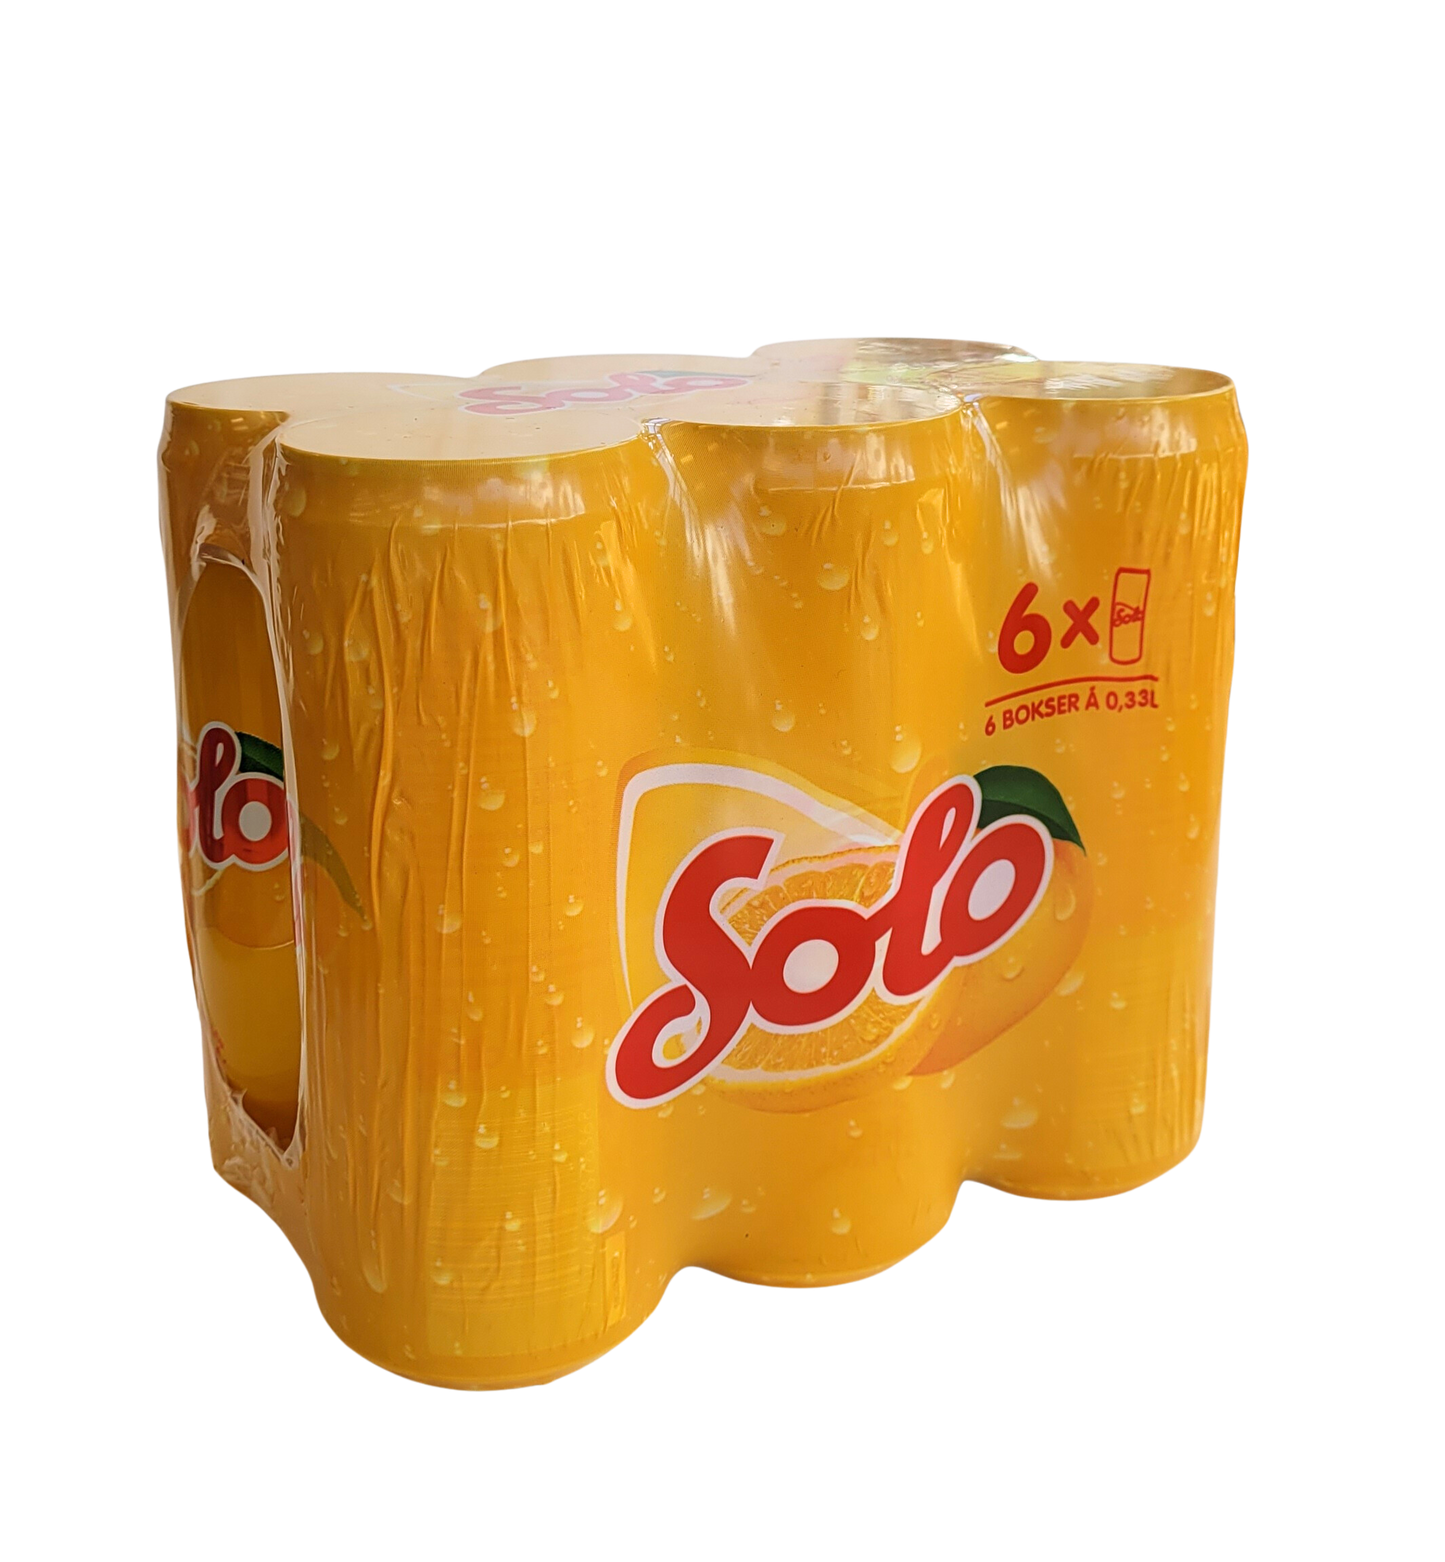 Solo (Orange Soda) 11 oz Can